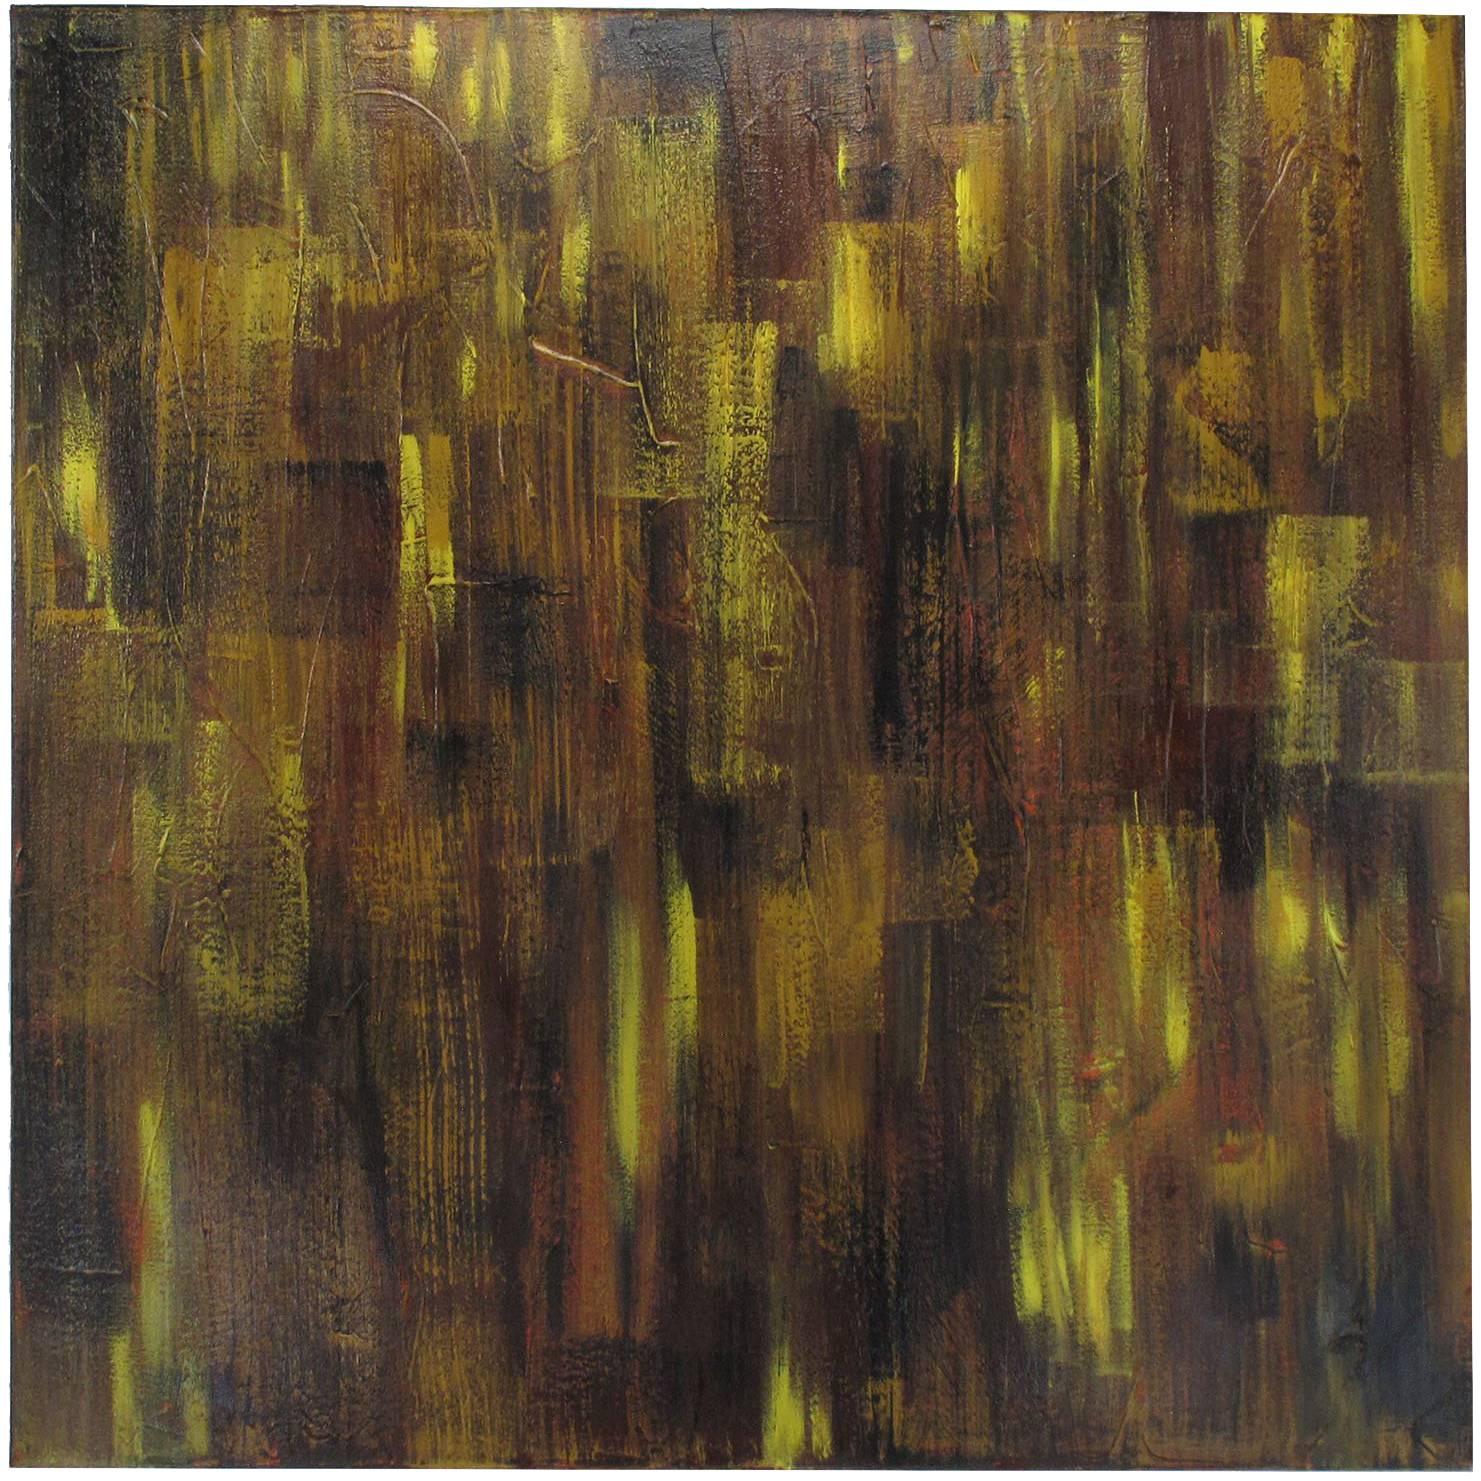 Abstraktes expressionistisches Ölgemälde von Bryan Boomershine, 2004